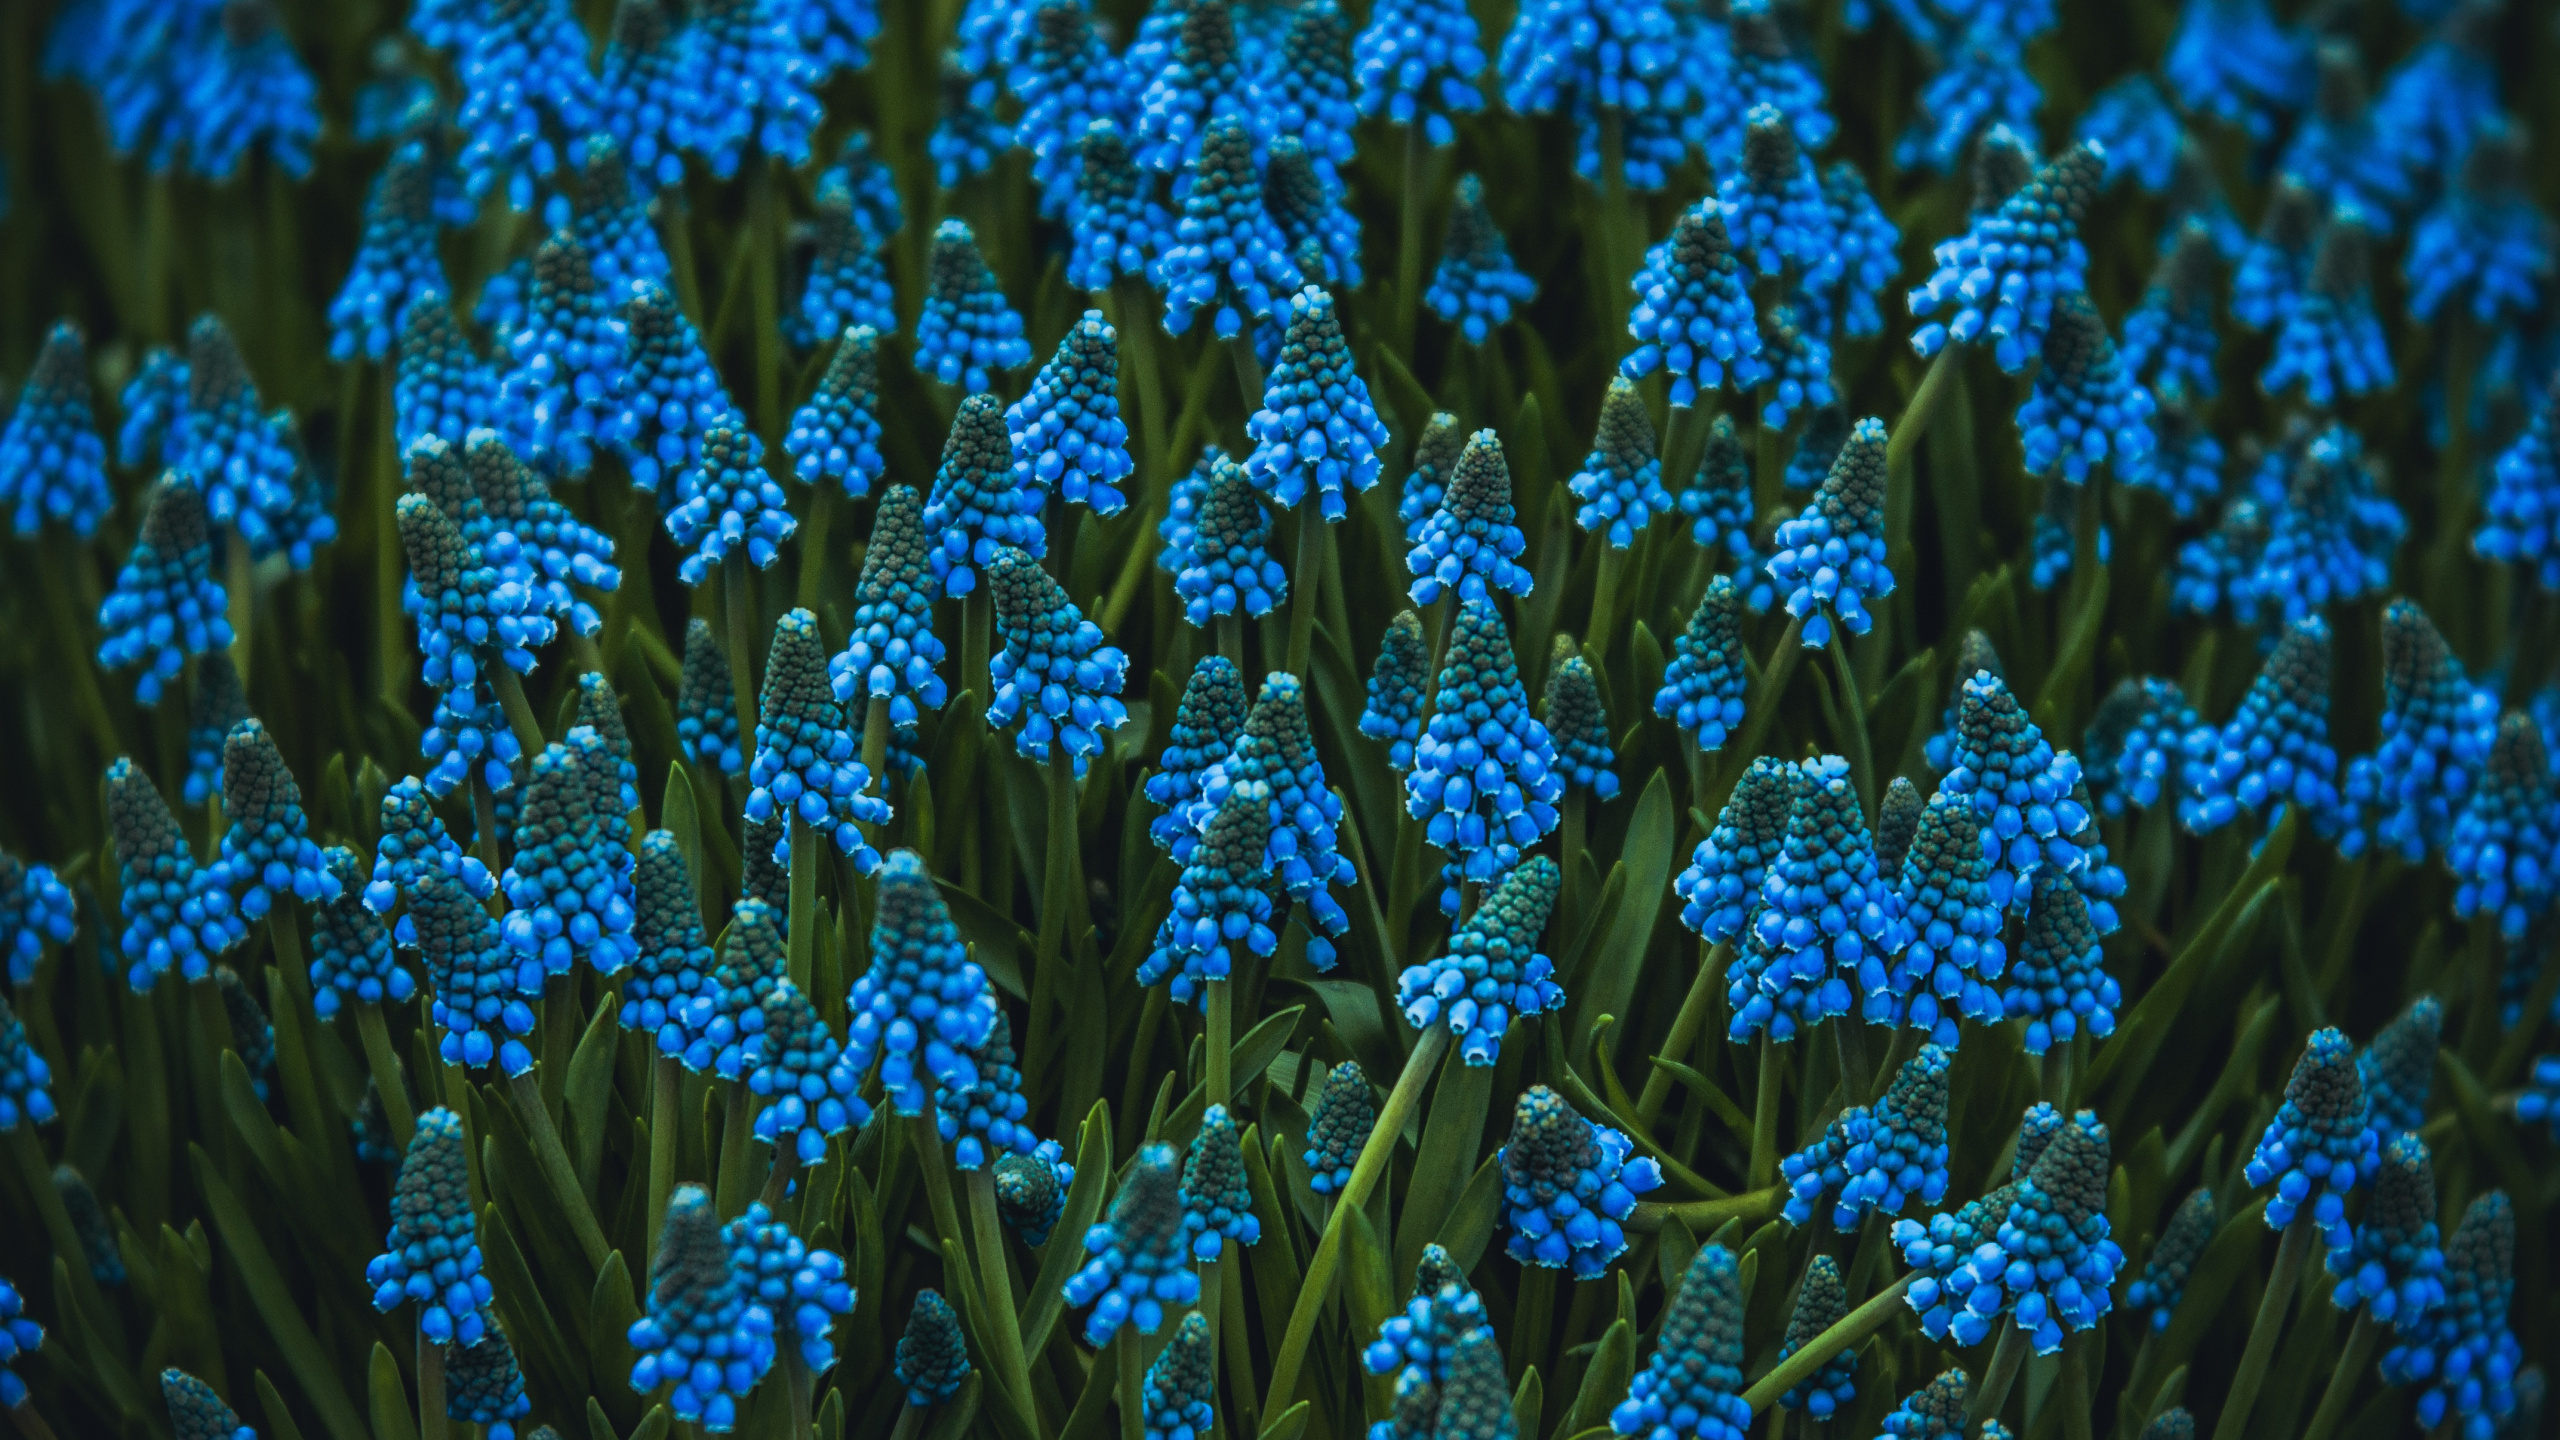 Blue Flowers in Tilt Shift Lens. Wallpaper in 2560x1440 Resolution